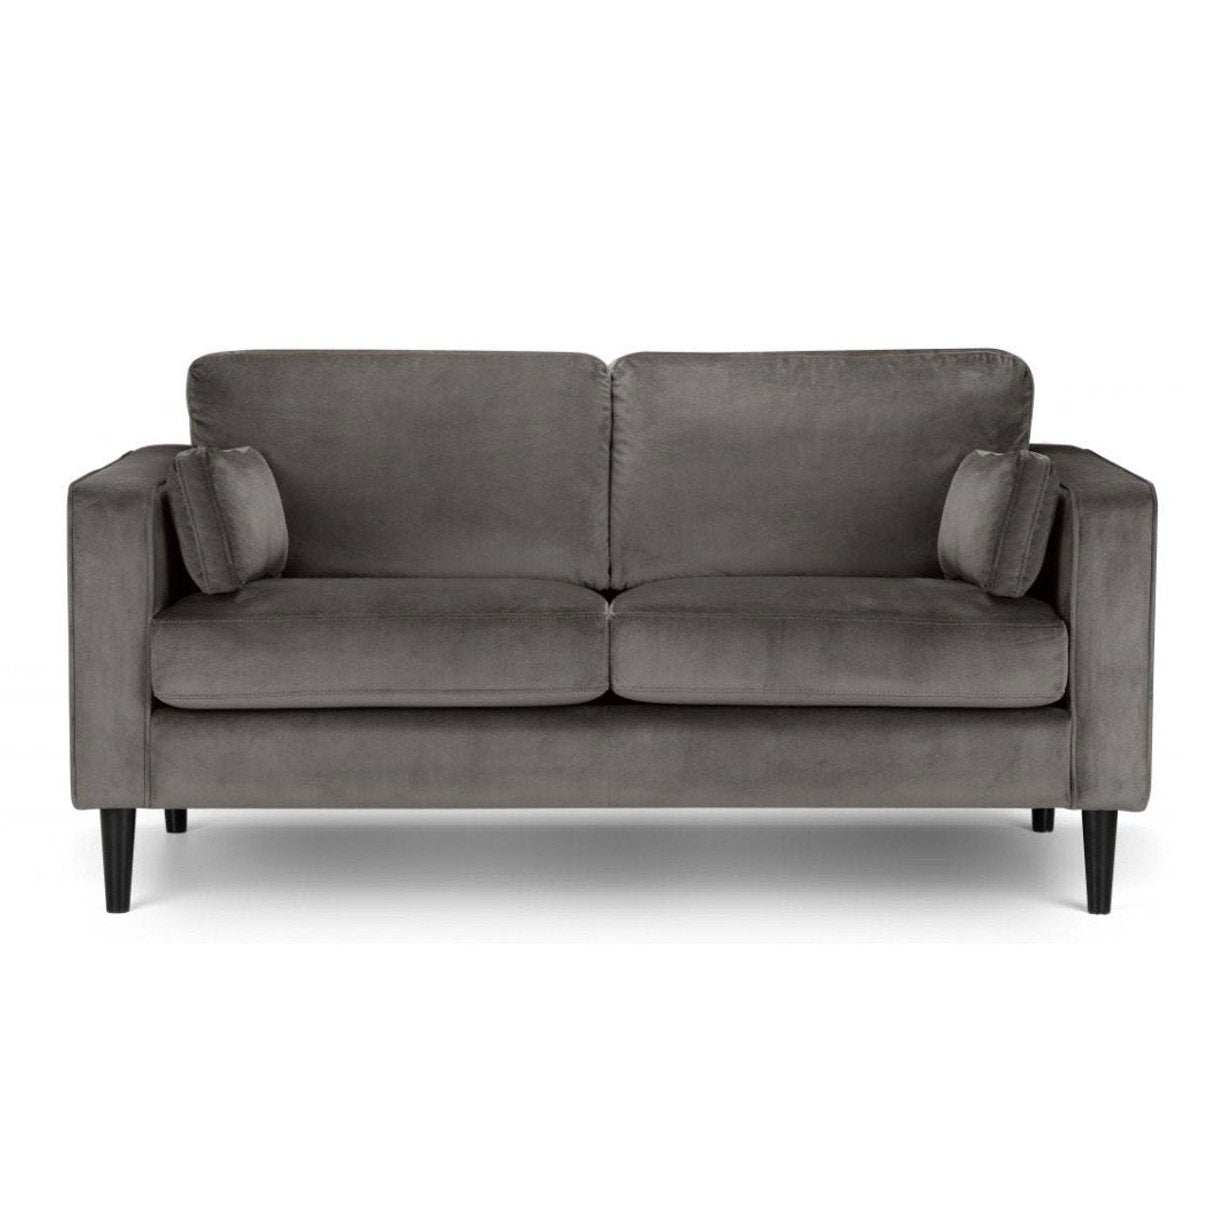 Howard 2 seater sofa - velvet | Manor Interiors